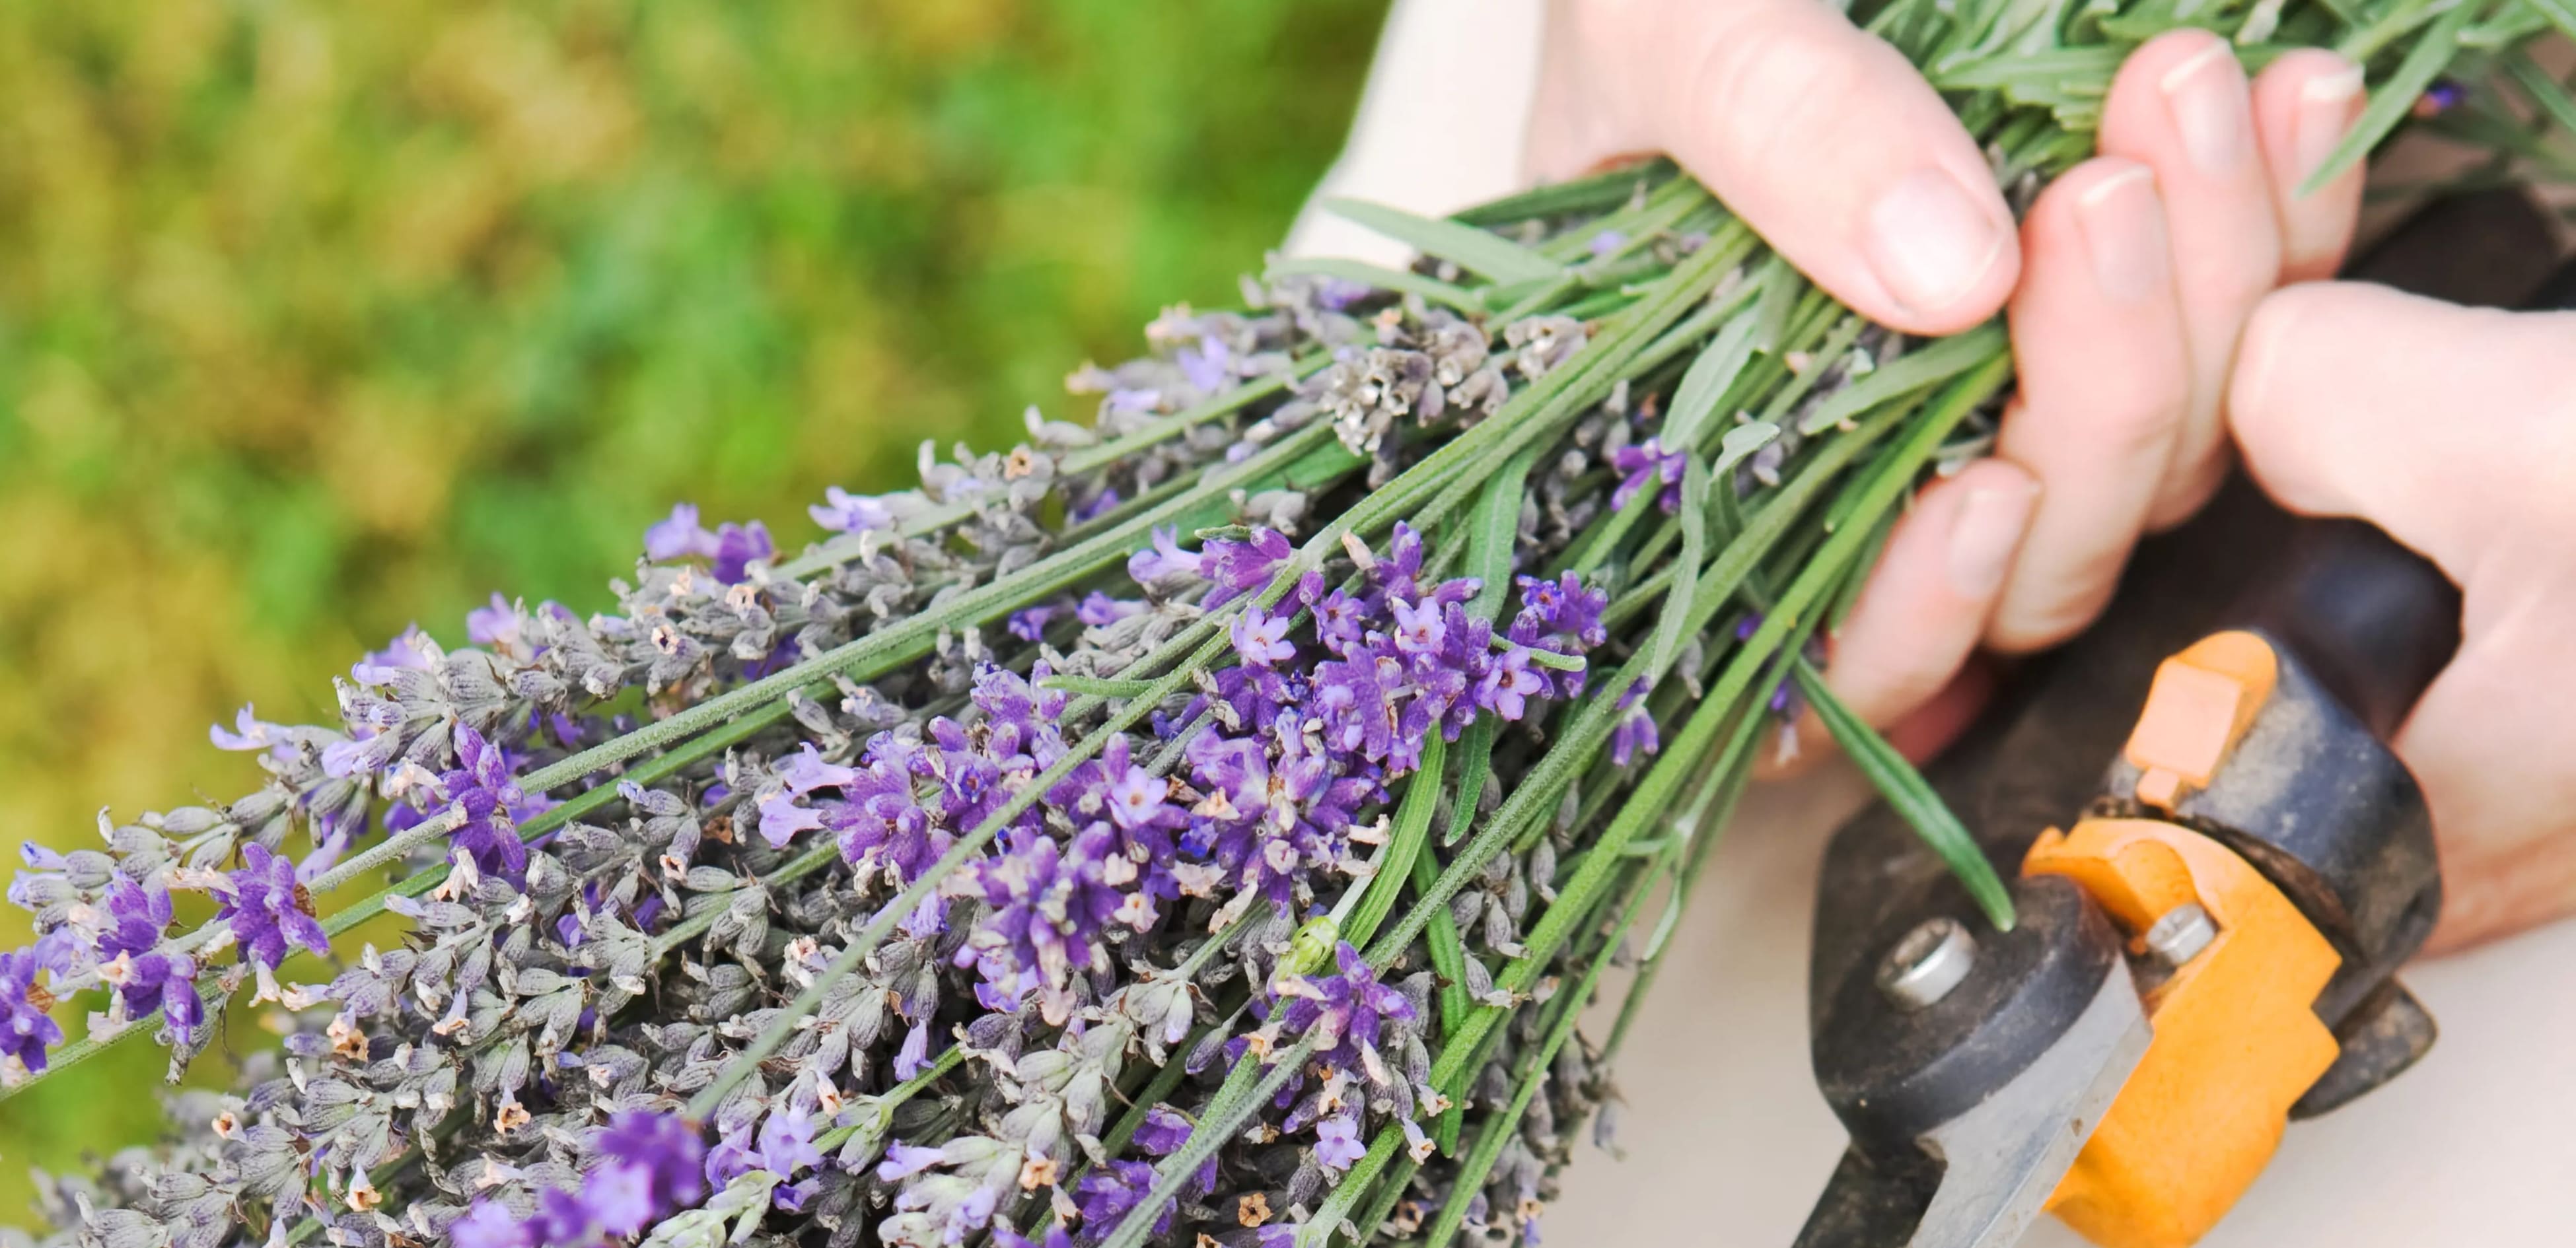 Milloin ja miten karsia laventelikasveja 5 yksinkertaisella tavalla?